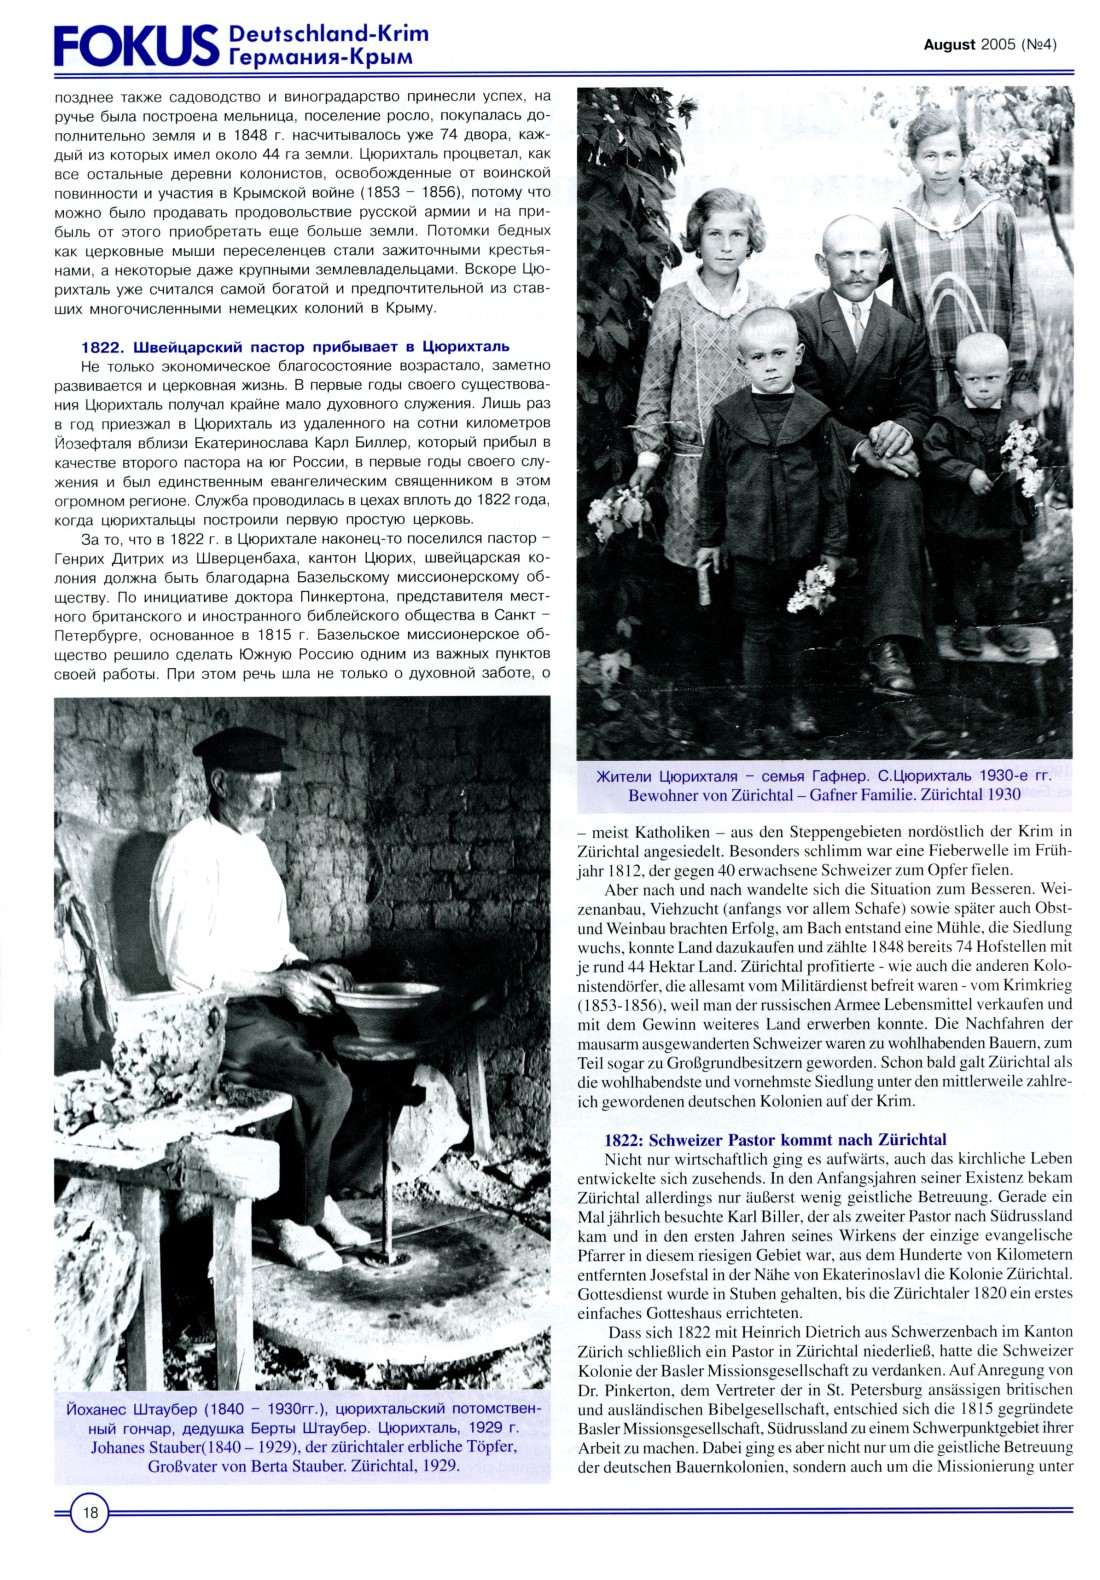 Kolonie Zrichtal: Vor 200 Jahren von Schweizer Auswanderern gegrndet, FOKUS Deutschland-Rim August 2005, Seite 18